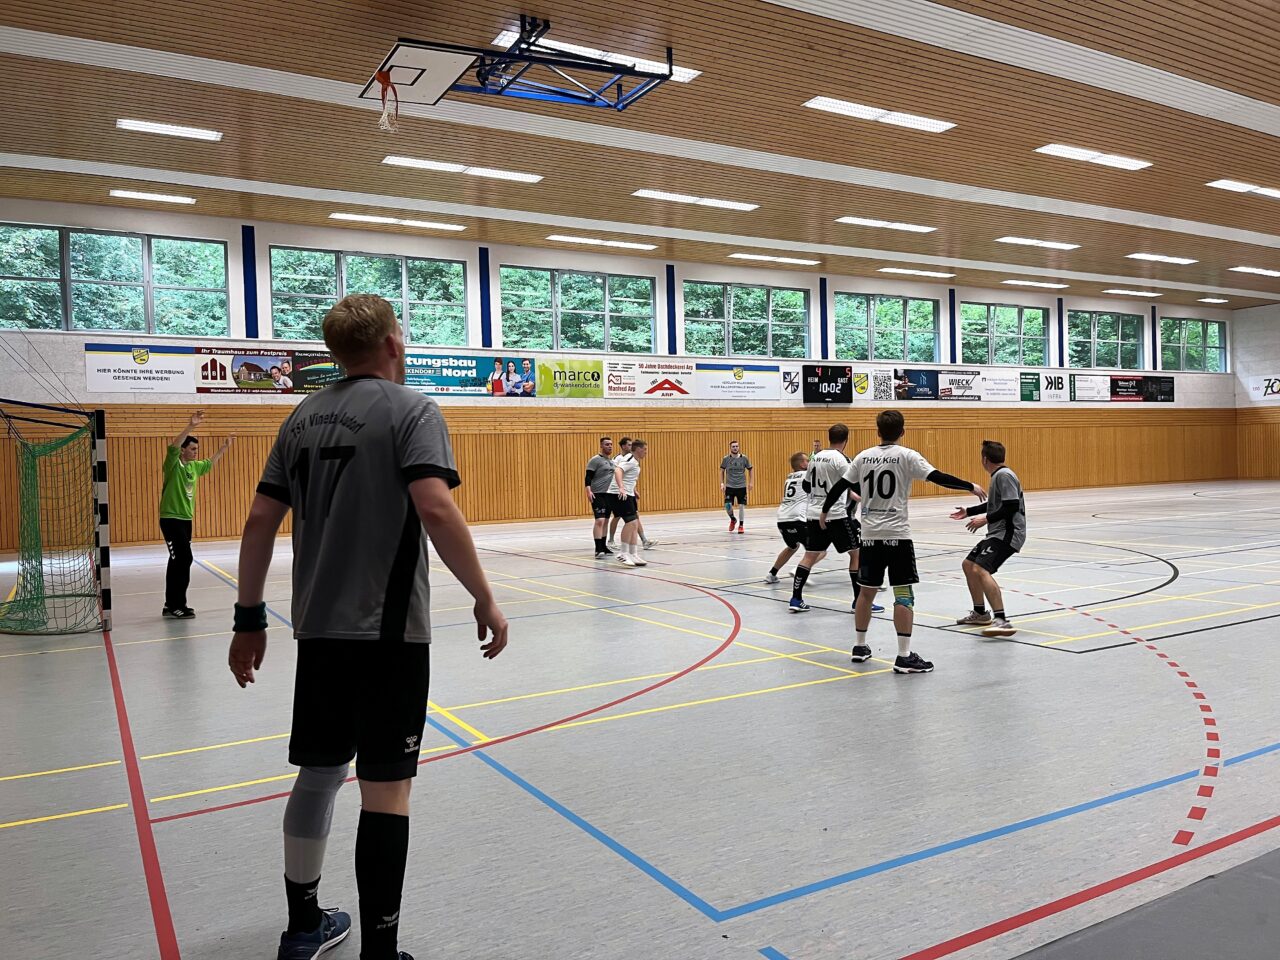 WaBo Cup 2023 - Handball Vorbereitungsturnier